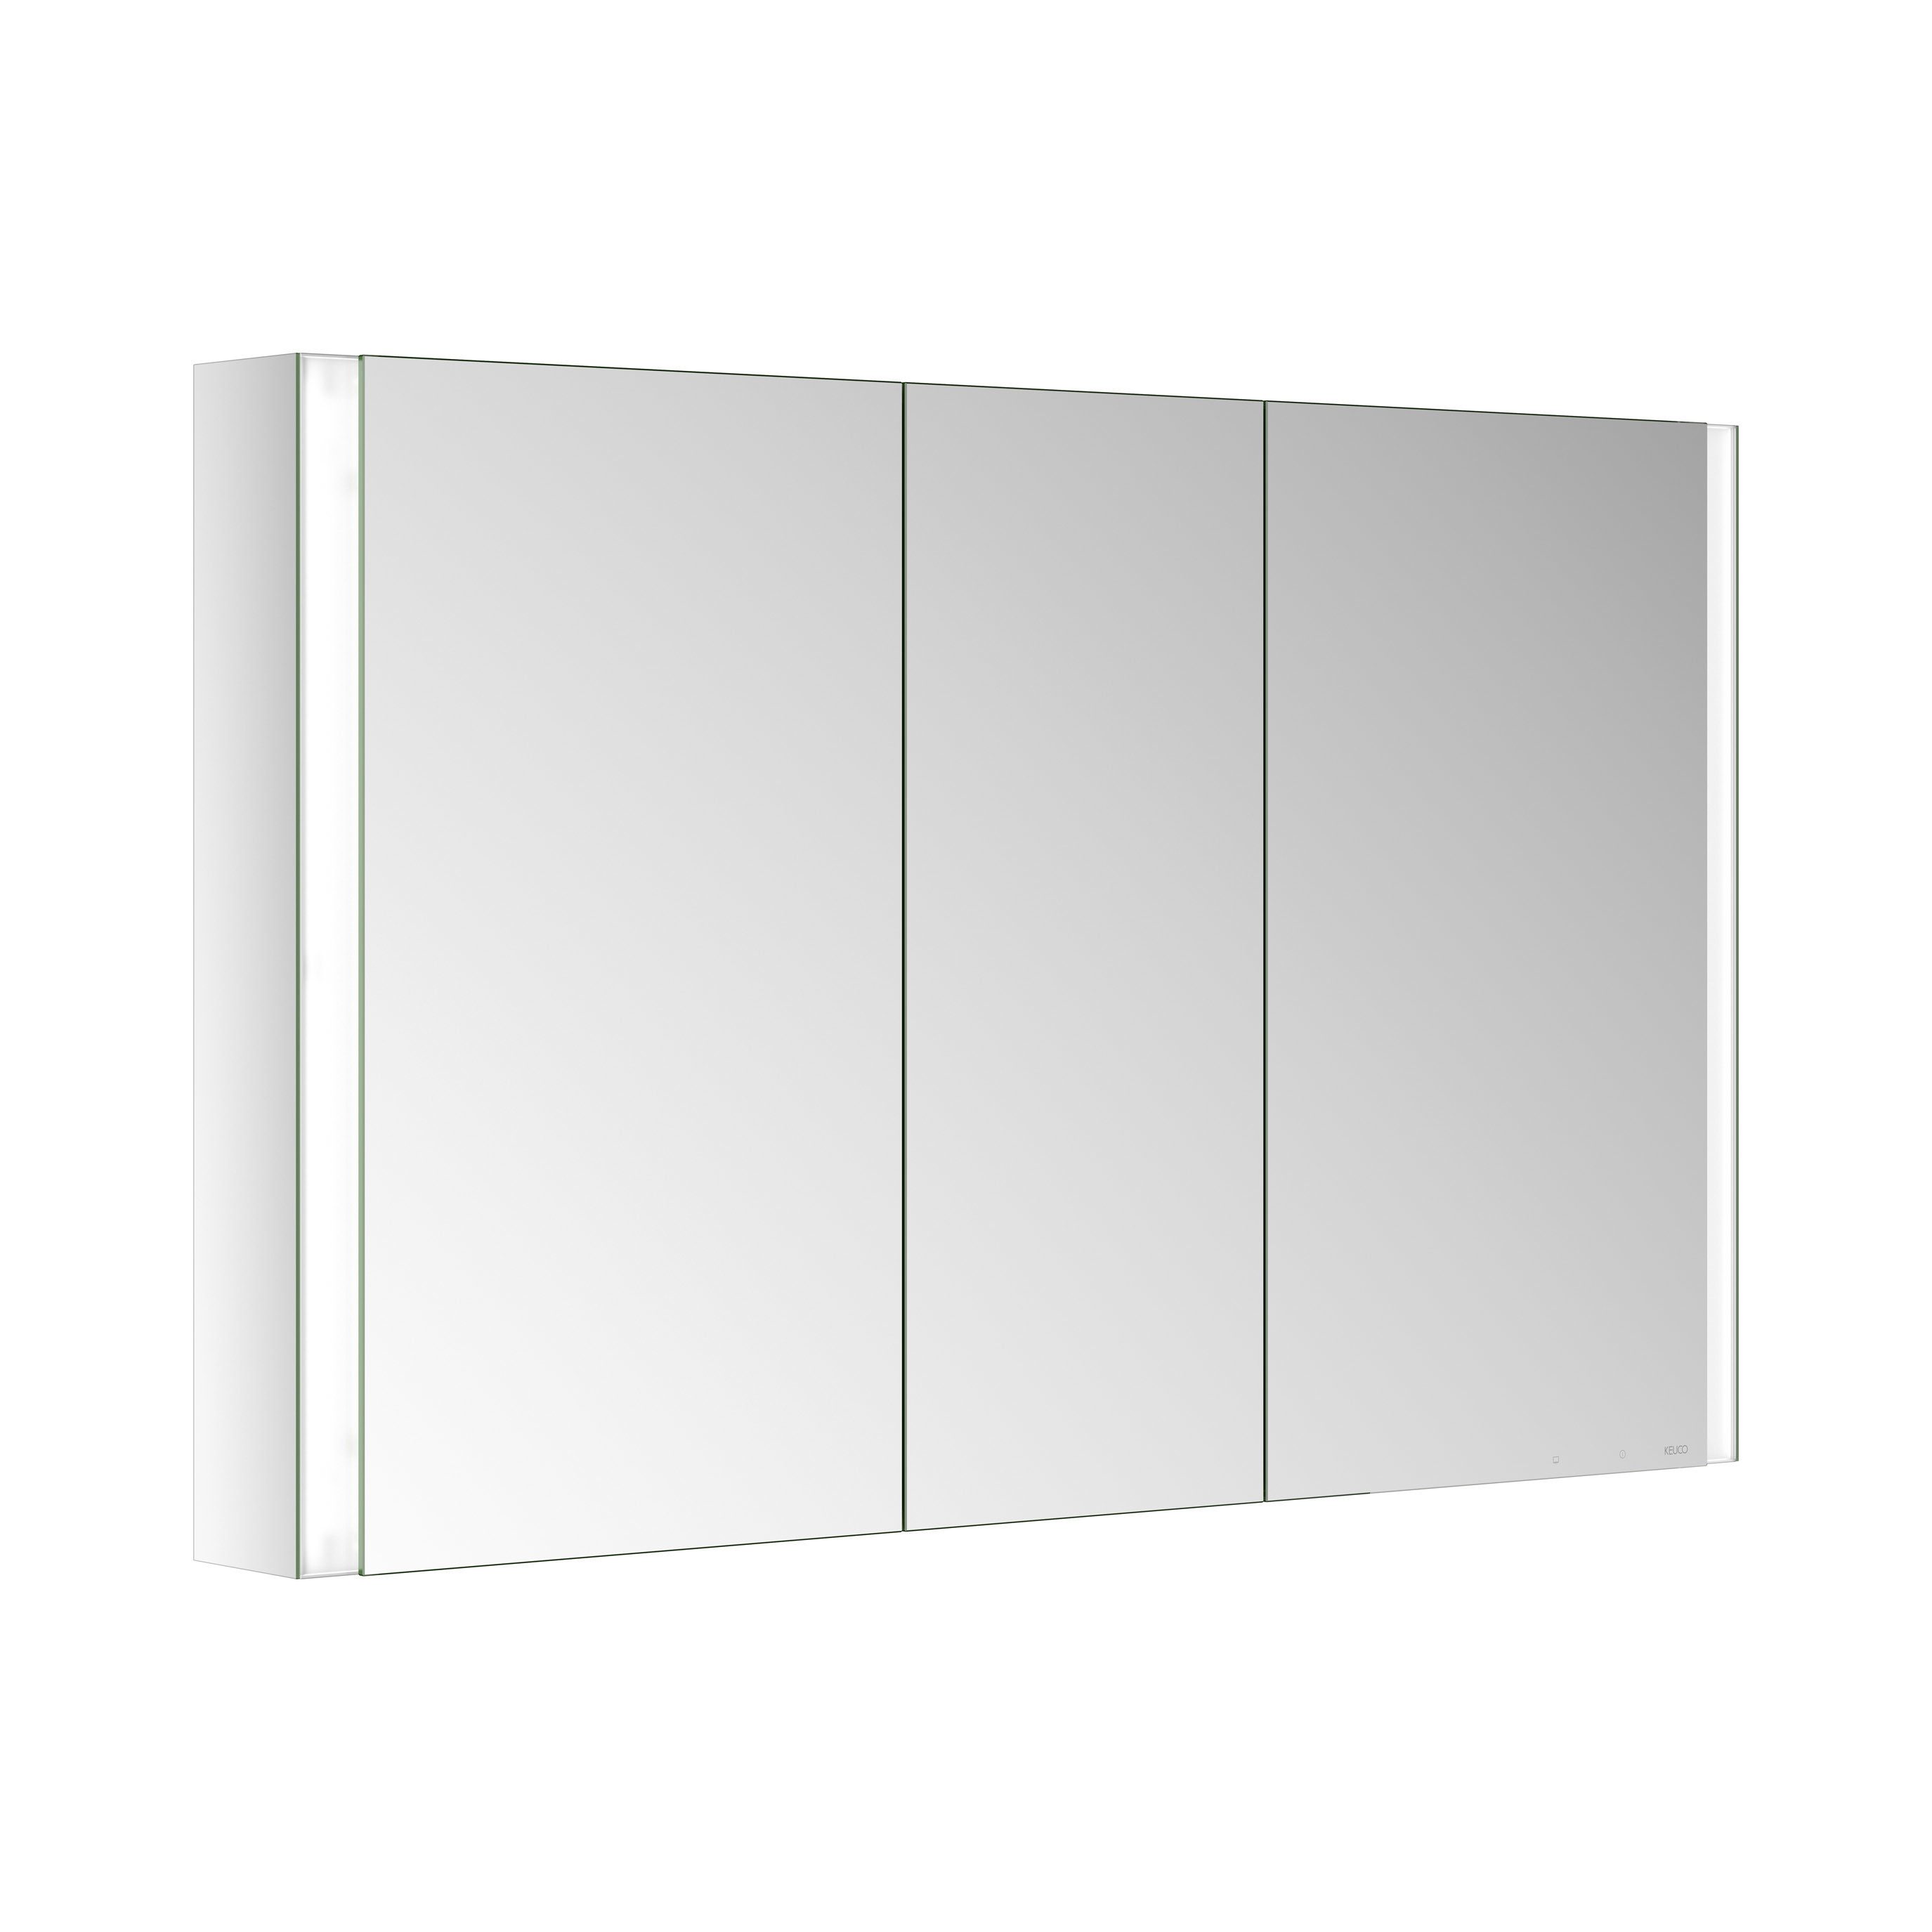 Keuco Badezimmerspiegelschrank Royal Finn Spiegelschrank LED, 120 cm, Aufputz, 3 Türen, Spiegelheizung, Seiten verspiegelt